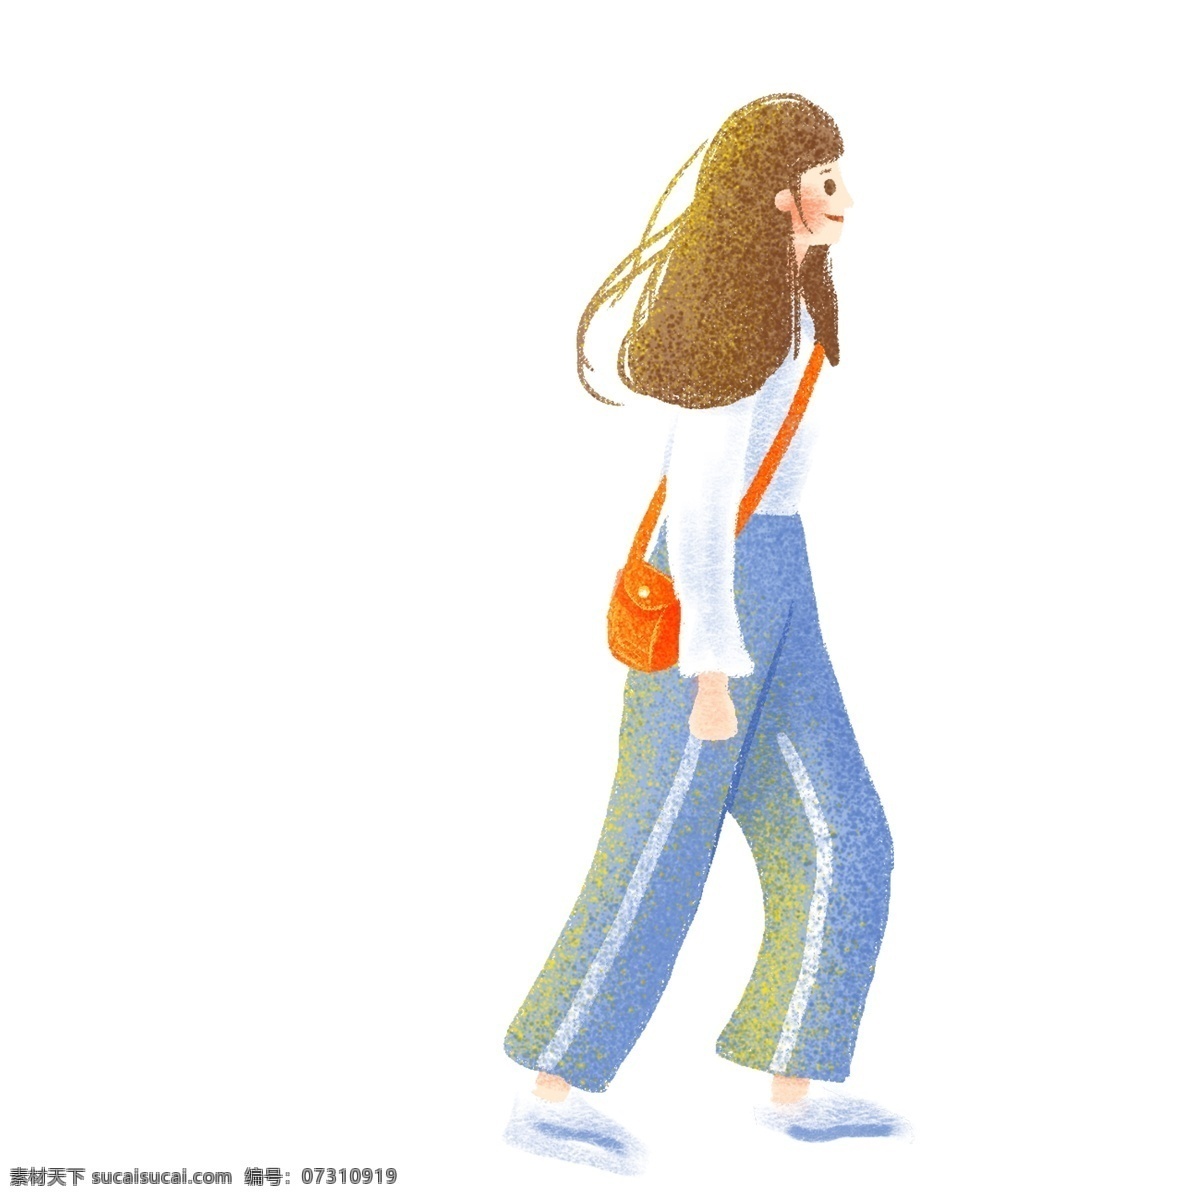 清晰 可爱 走路 女孩 卡通 手绘 清新 散步 女生 人物